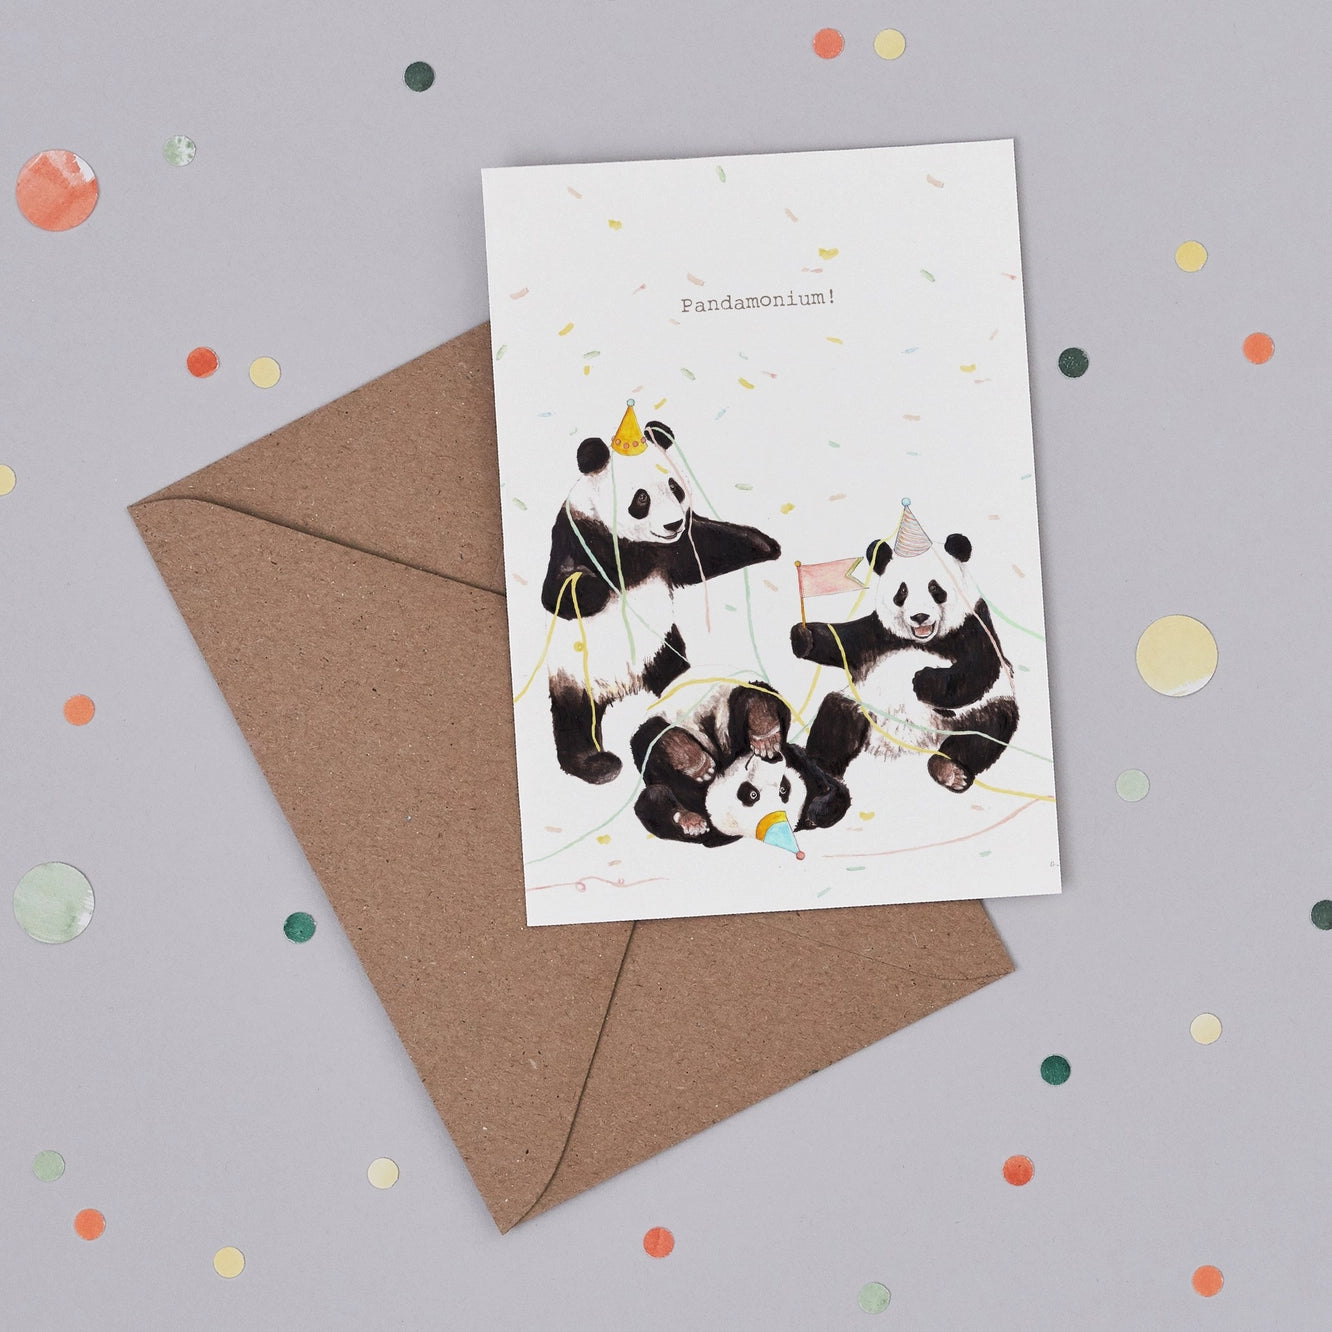 Pandamonium! Greetings Card